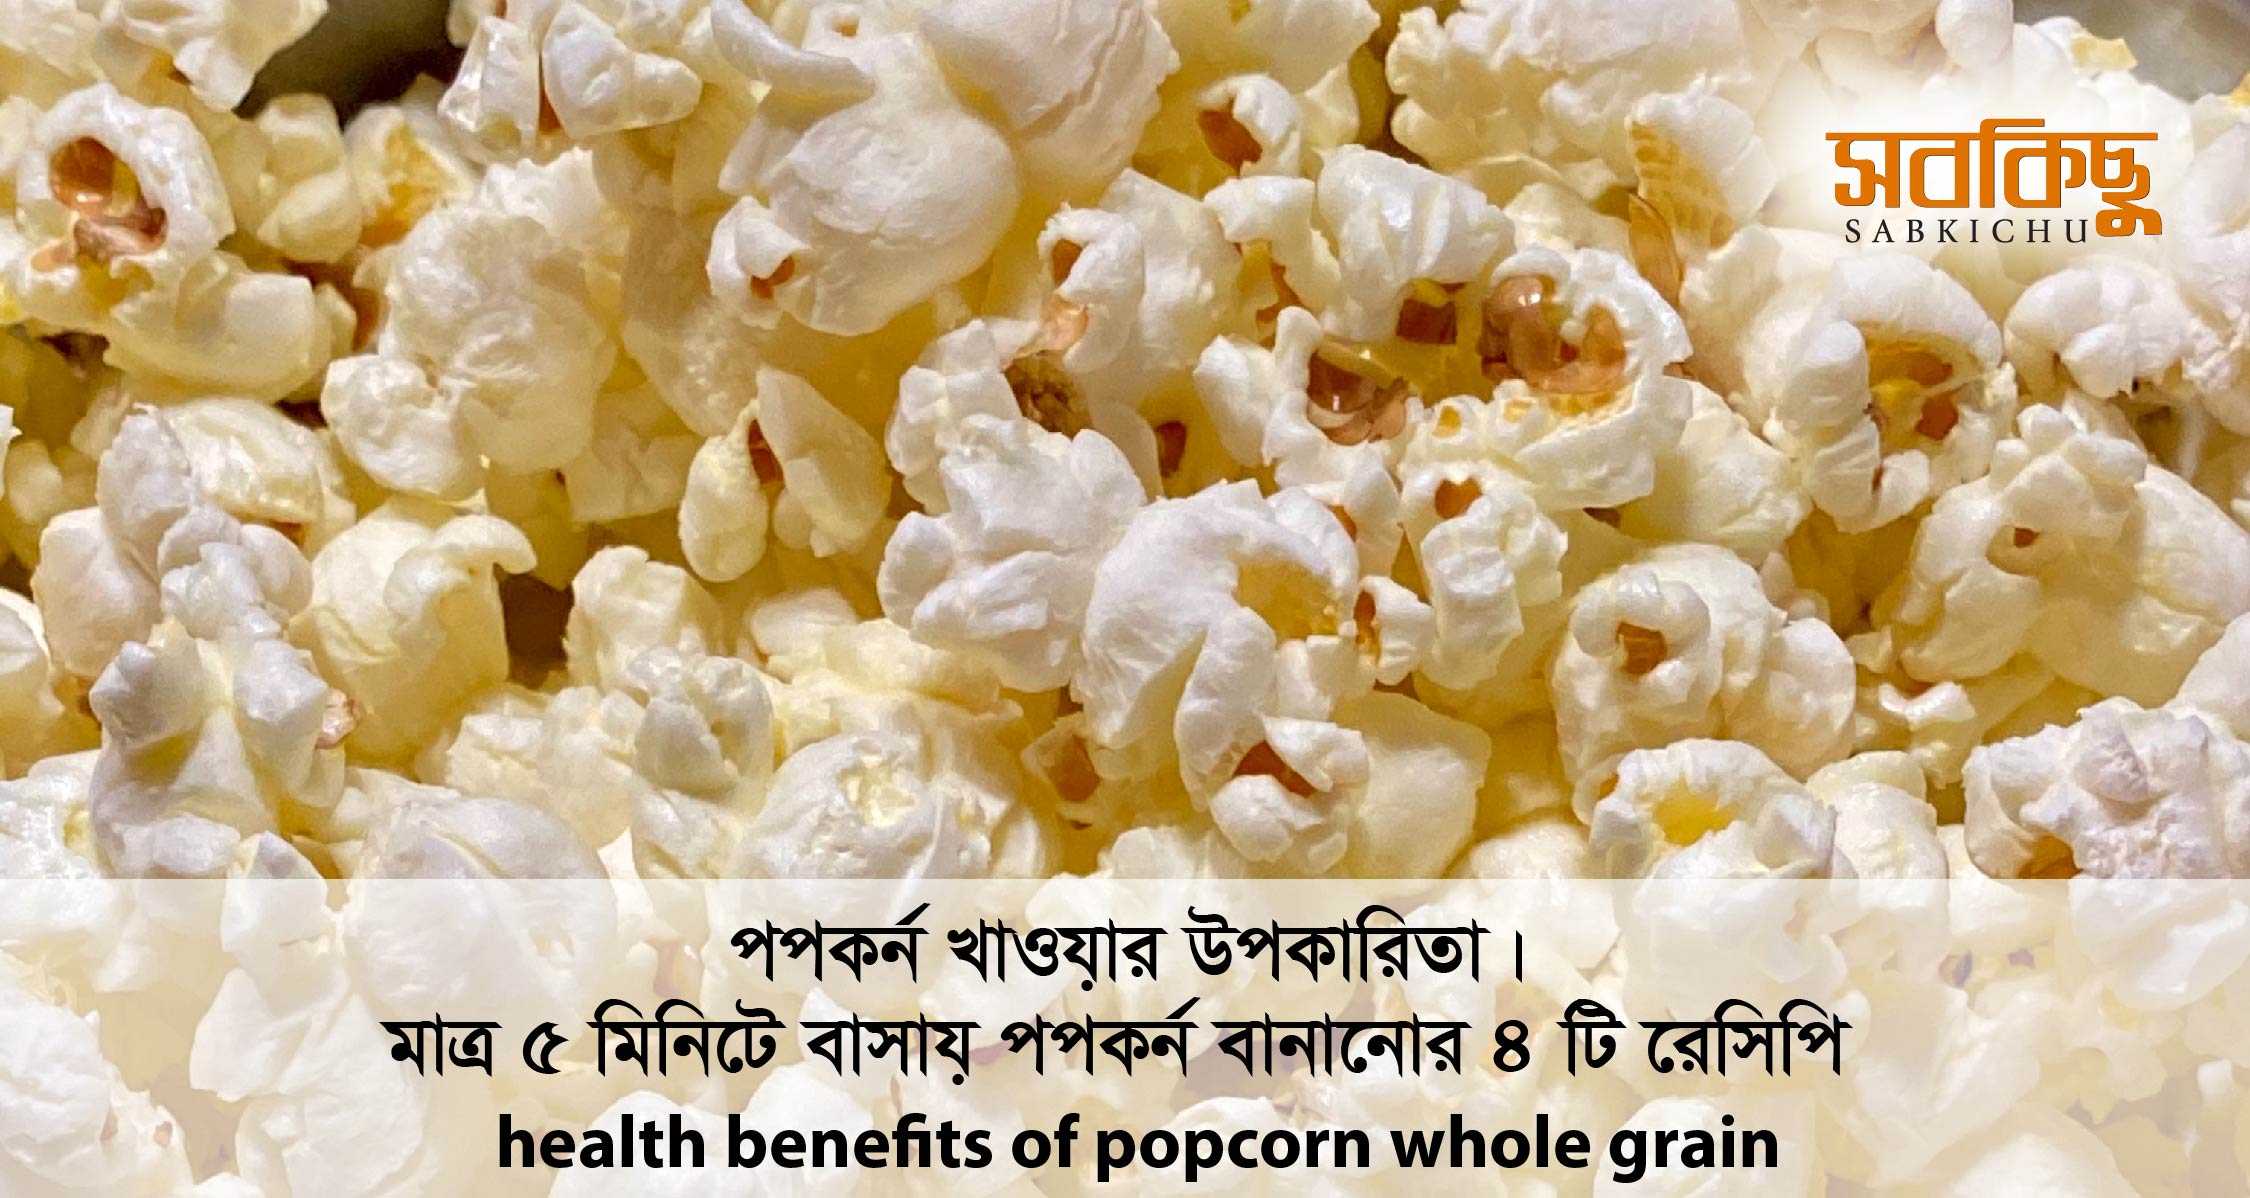 পপকর্ন খাওয়ার উপকারিতা । মাত্র ৫ মিনিটে বাসায় পপকর্ন বানানোর ৪ টি রেসিপি | health benefits of popcorn whole grain